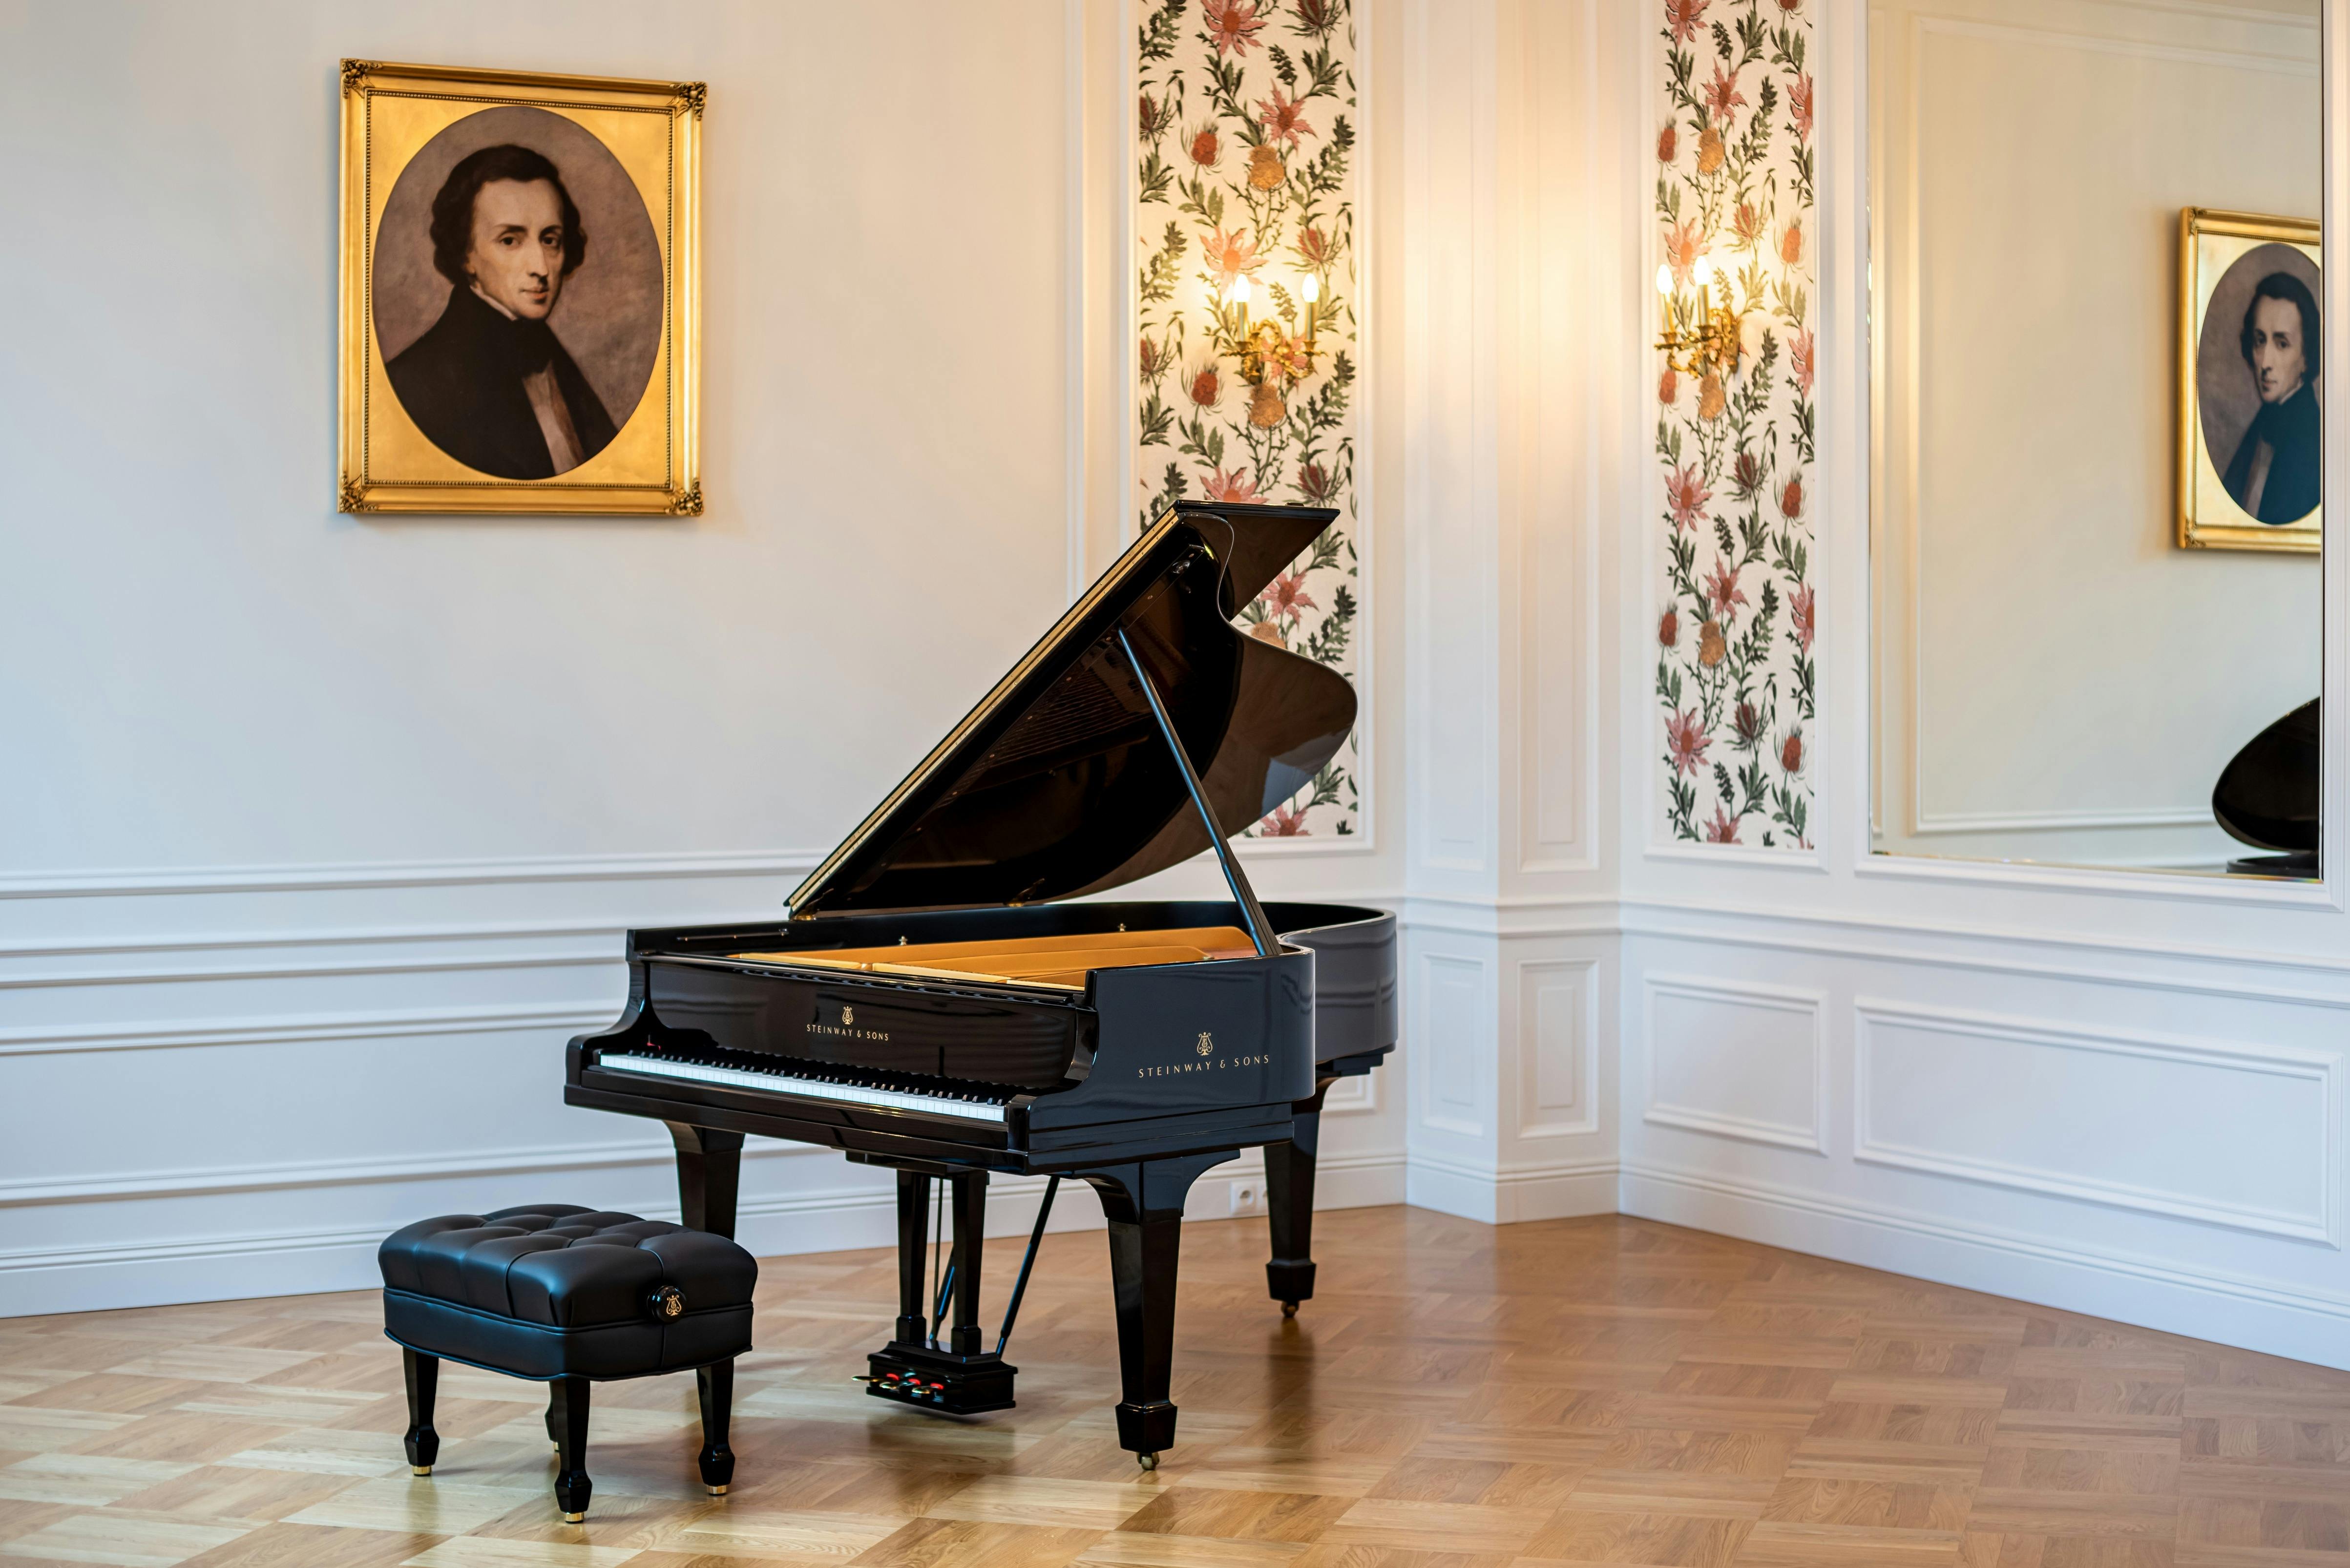 Entradas para los conciertos de Chopin en la Sala de Conciertos Fryderyk de Varsovia